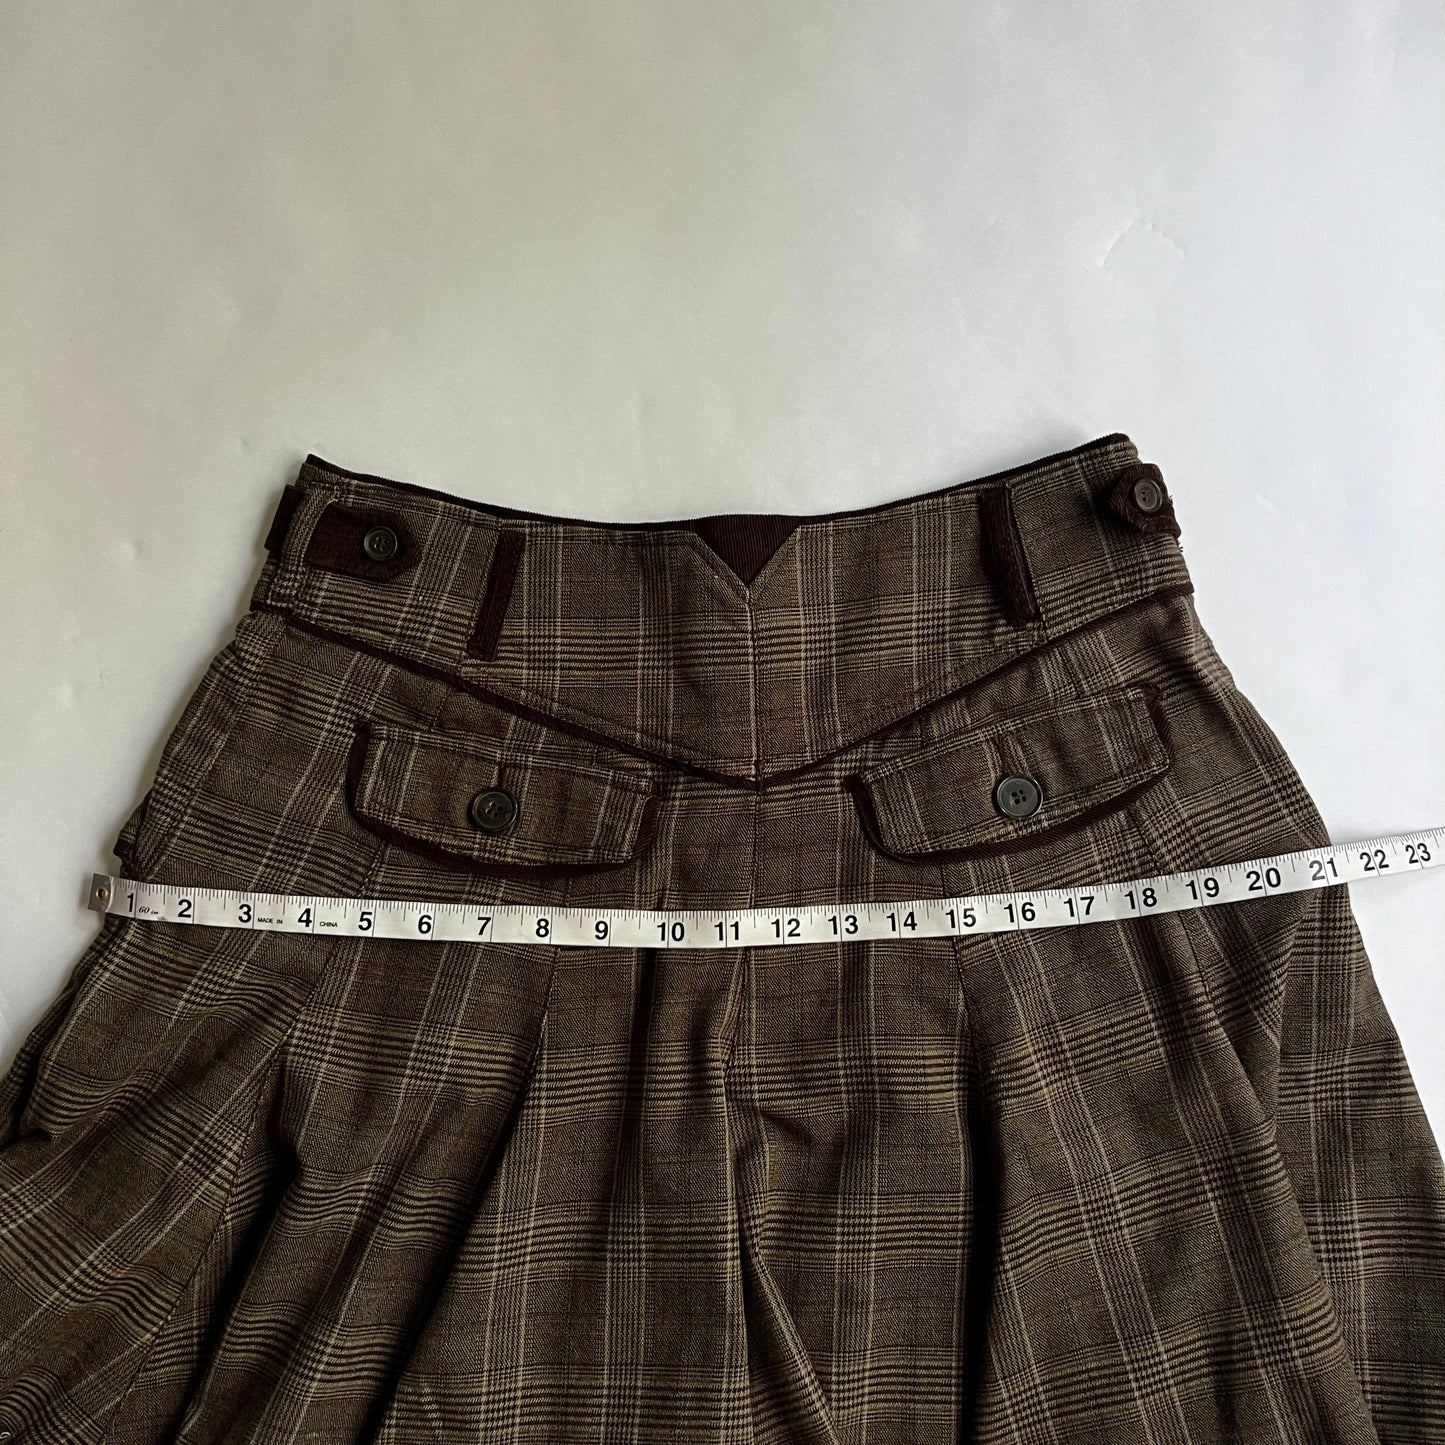 Vintage Plaid Mini Skirt Y2K 2000s